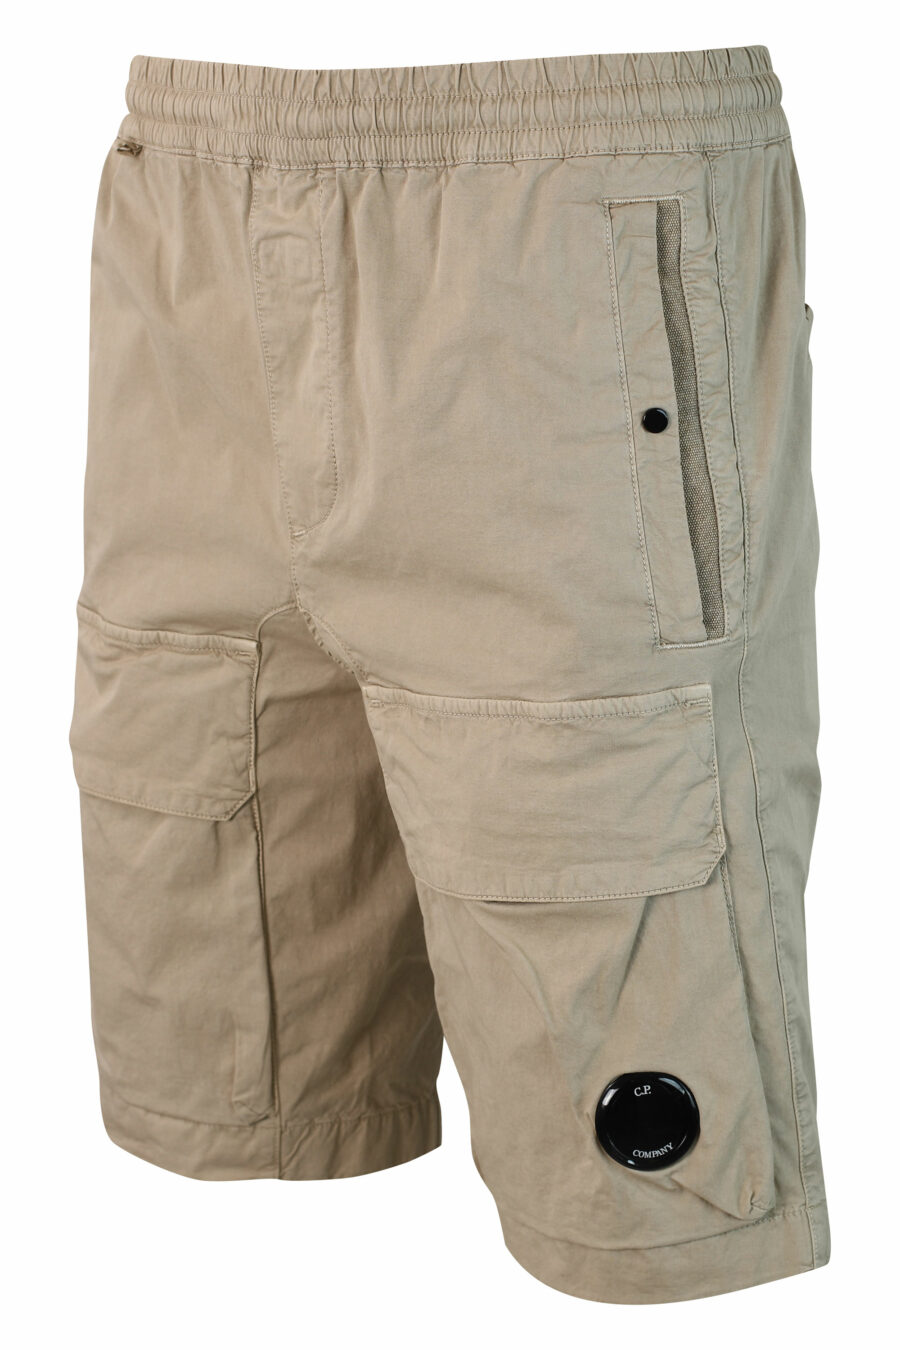 Short beige extensible avec poches avant et mini-logo circulaire - IMG 9908 1